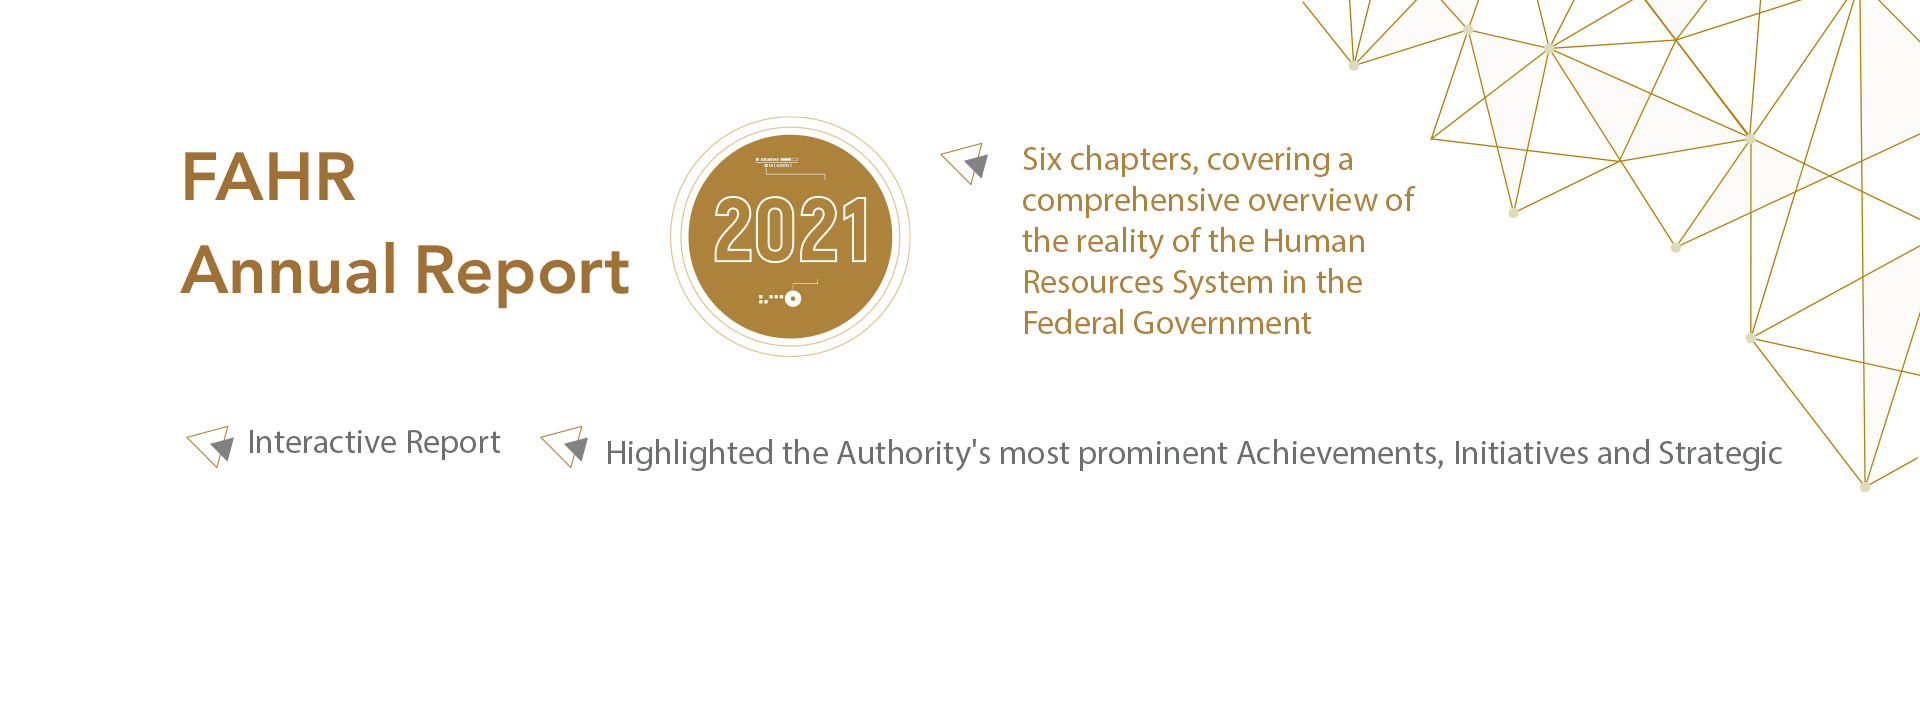 FAHR Annual Report 2021